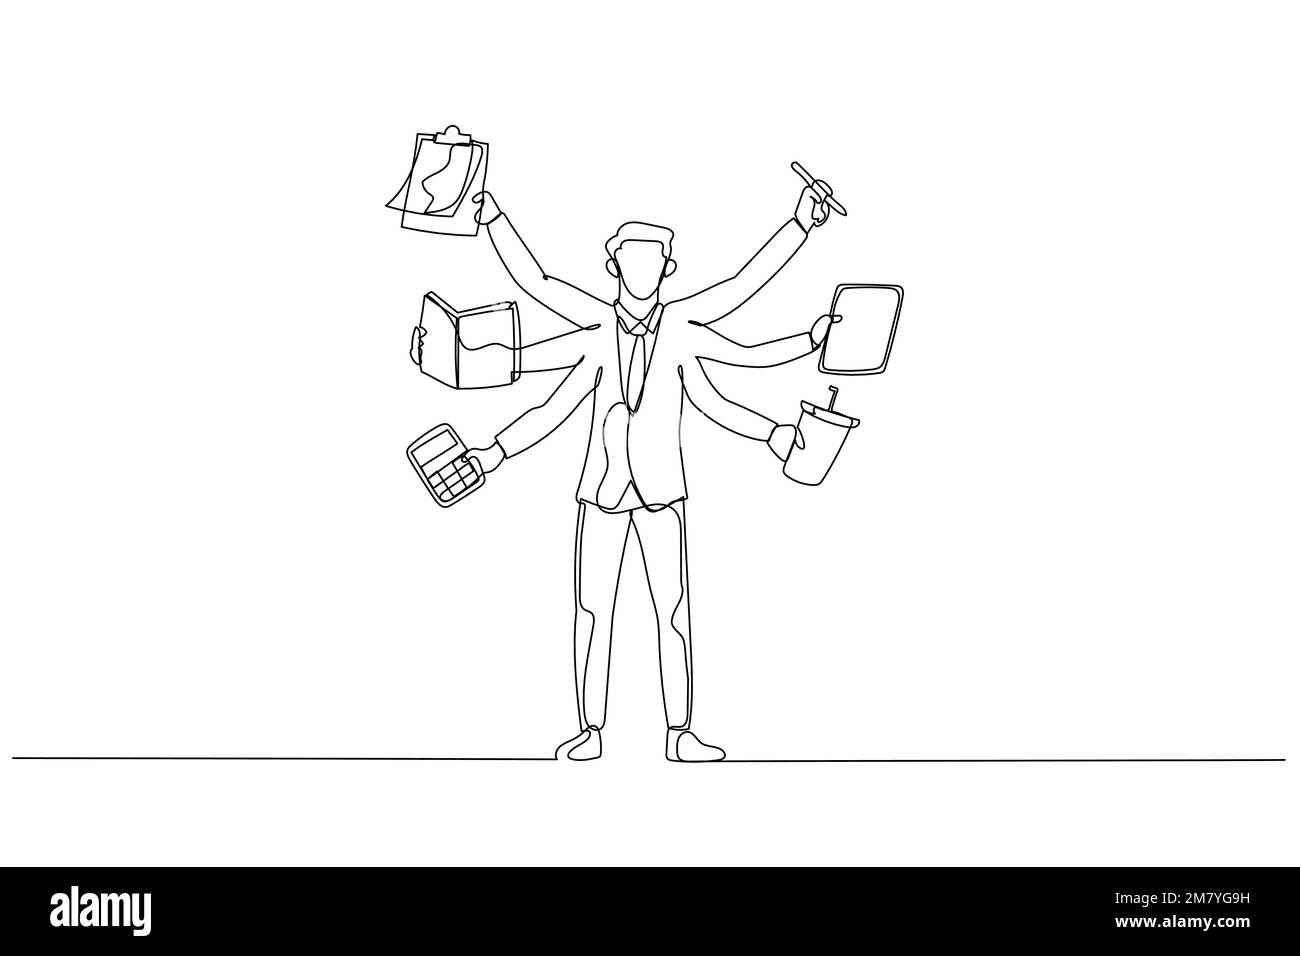 Zeichnung eines Geschäftsmannes mit mehrhändigem Multitasking-Konzept. Design im Strichkunststil Stock Vektor